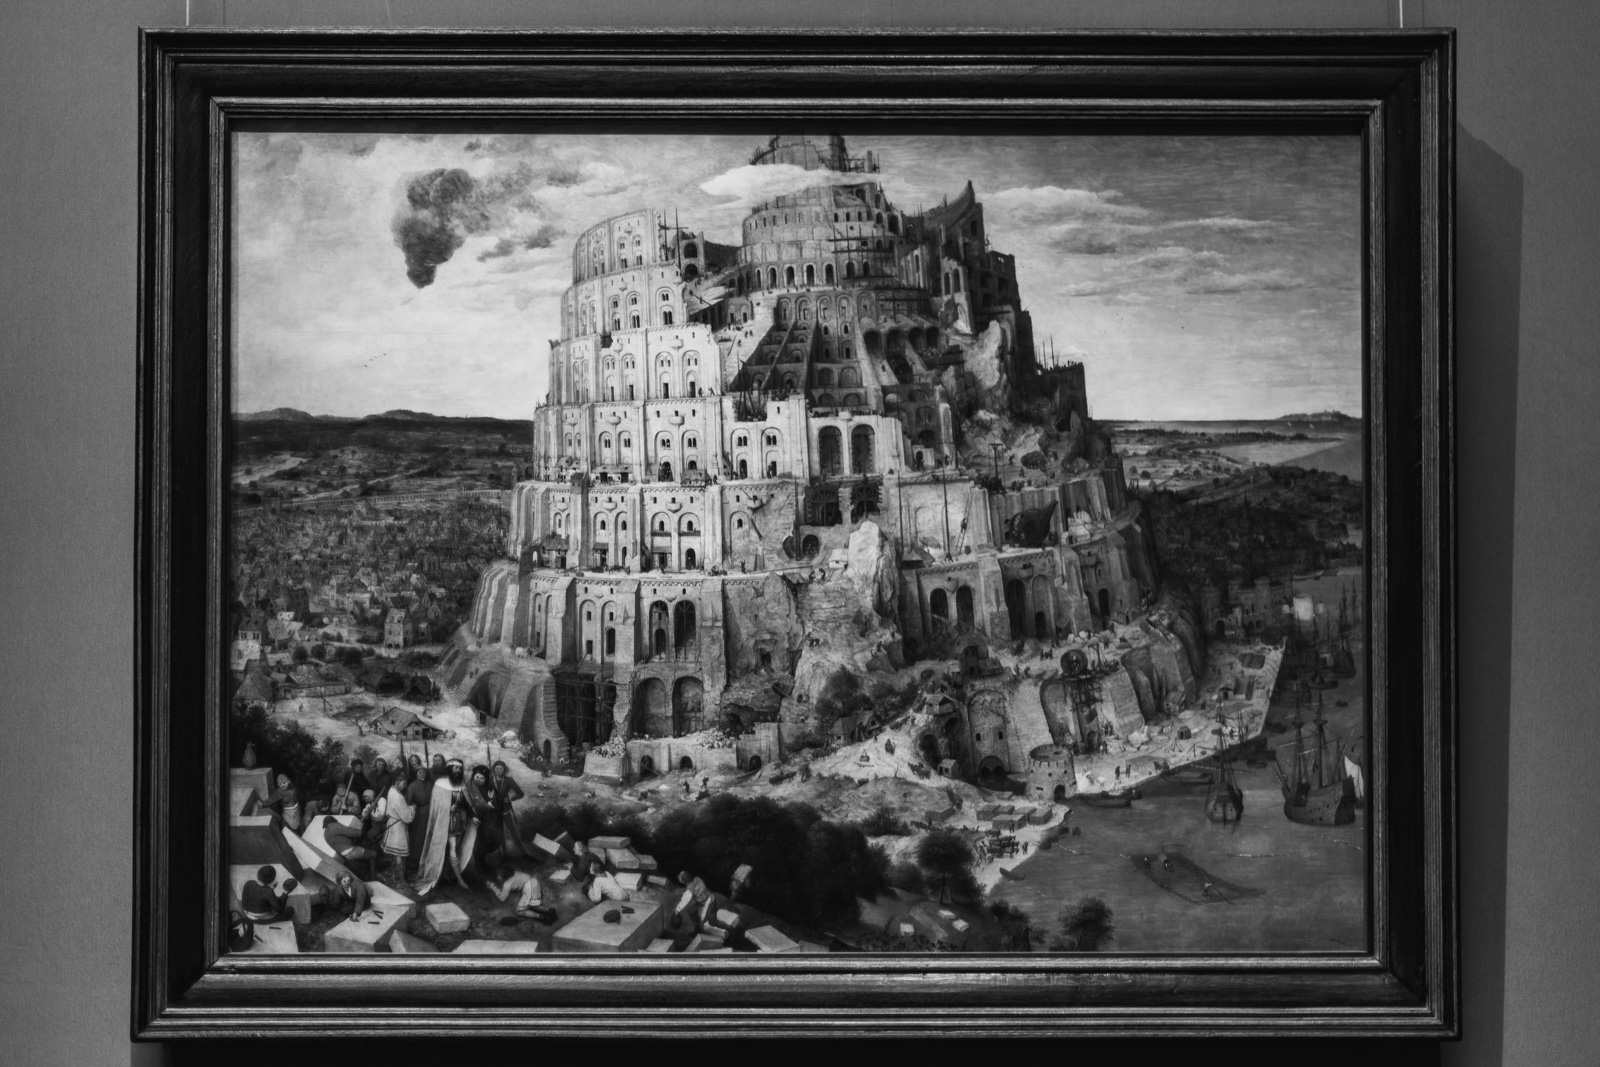 Bruegel Tower of Babel